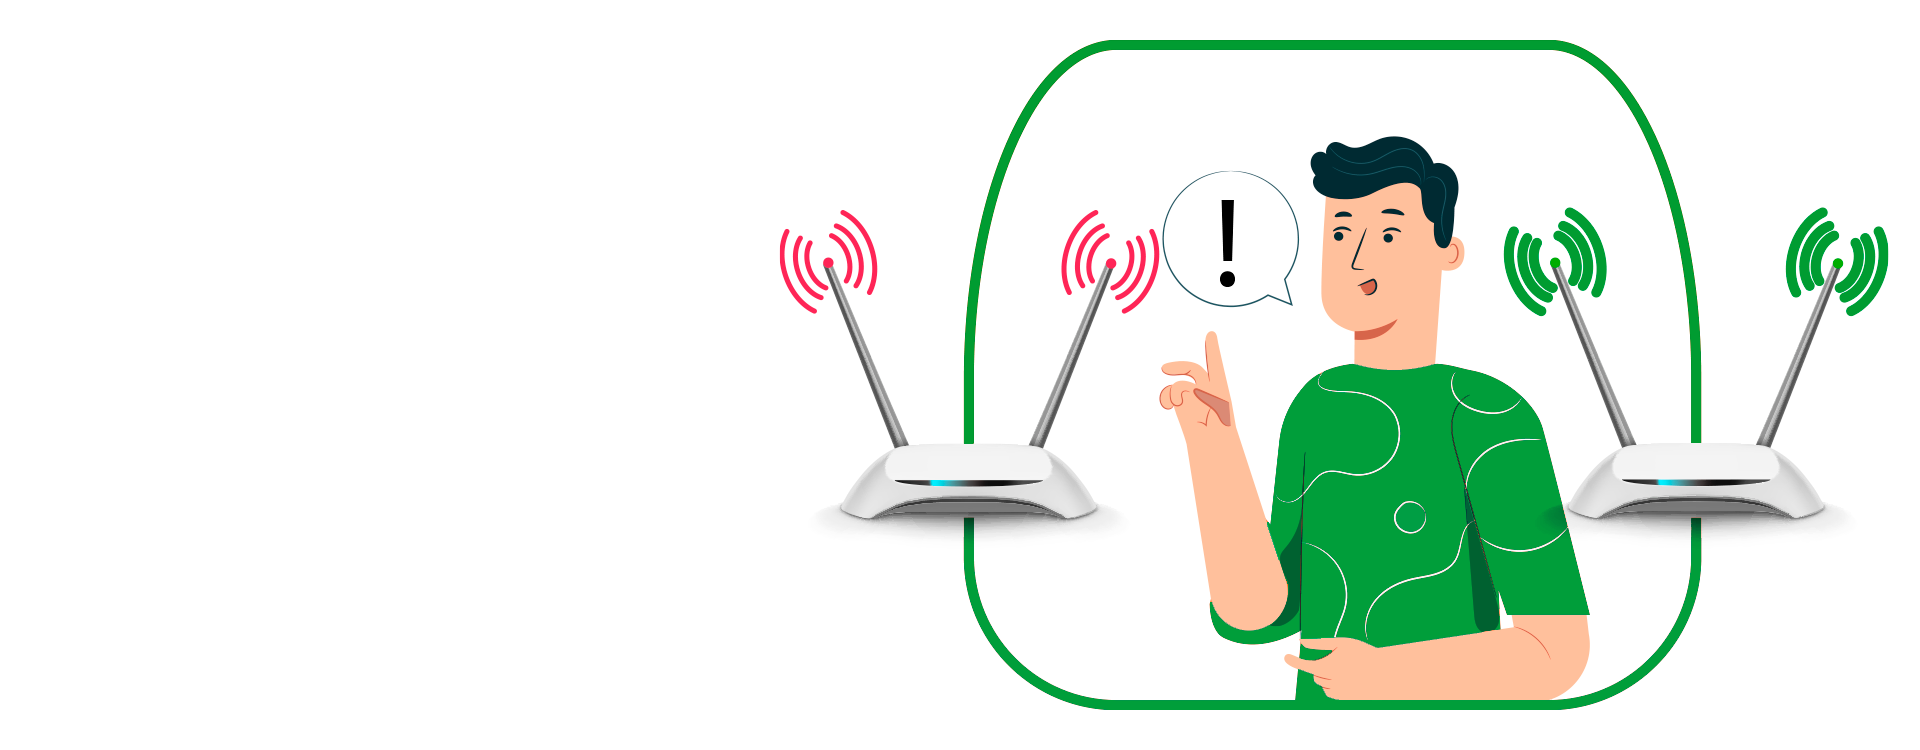 Kak-podklyuchit-Wi-Fi-router-bez-pomoschi-specialista-wifi1